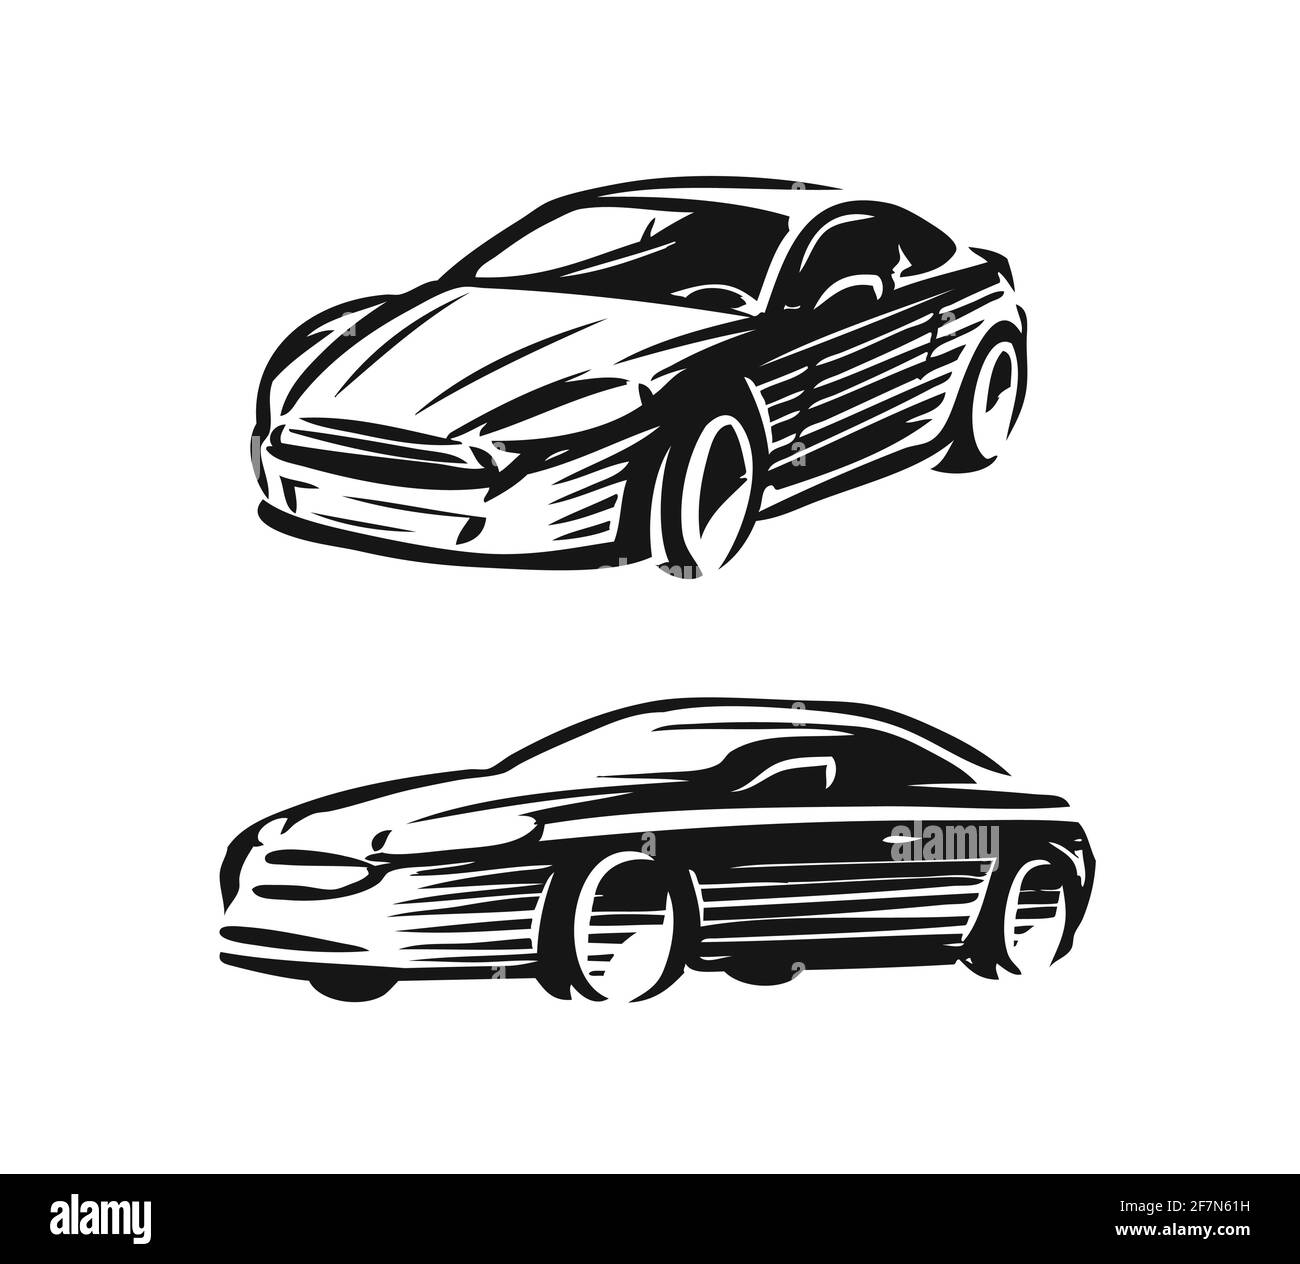 Abstract car logo. Automotive concept vector illustration Stock Vector